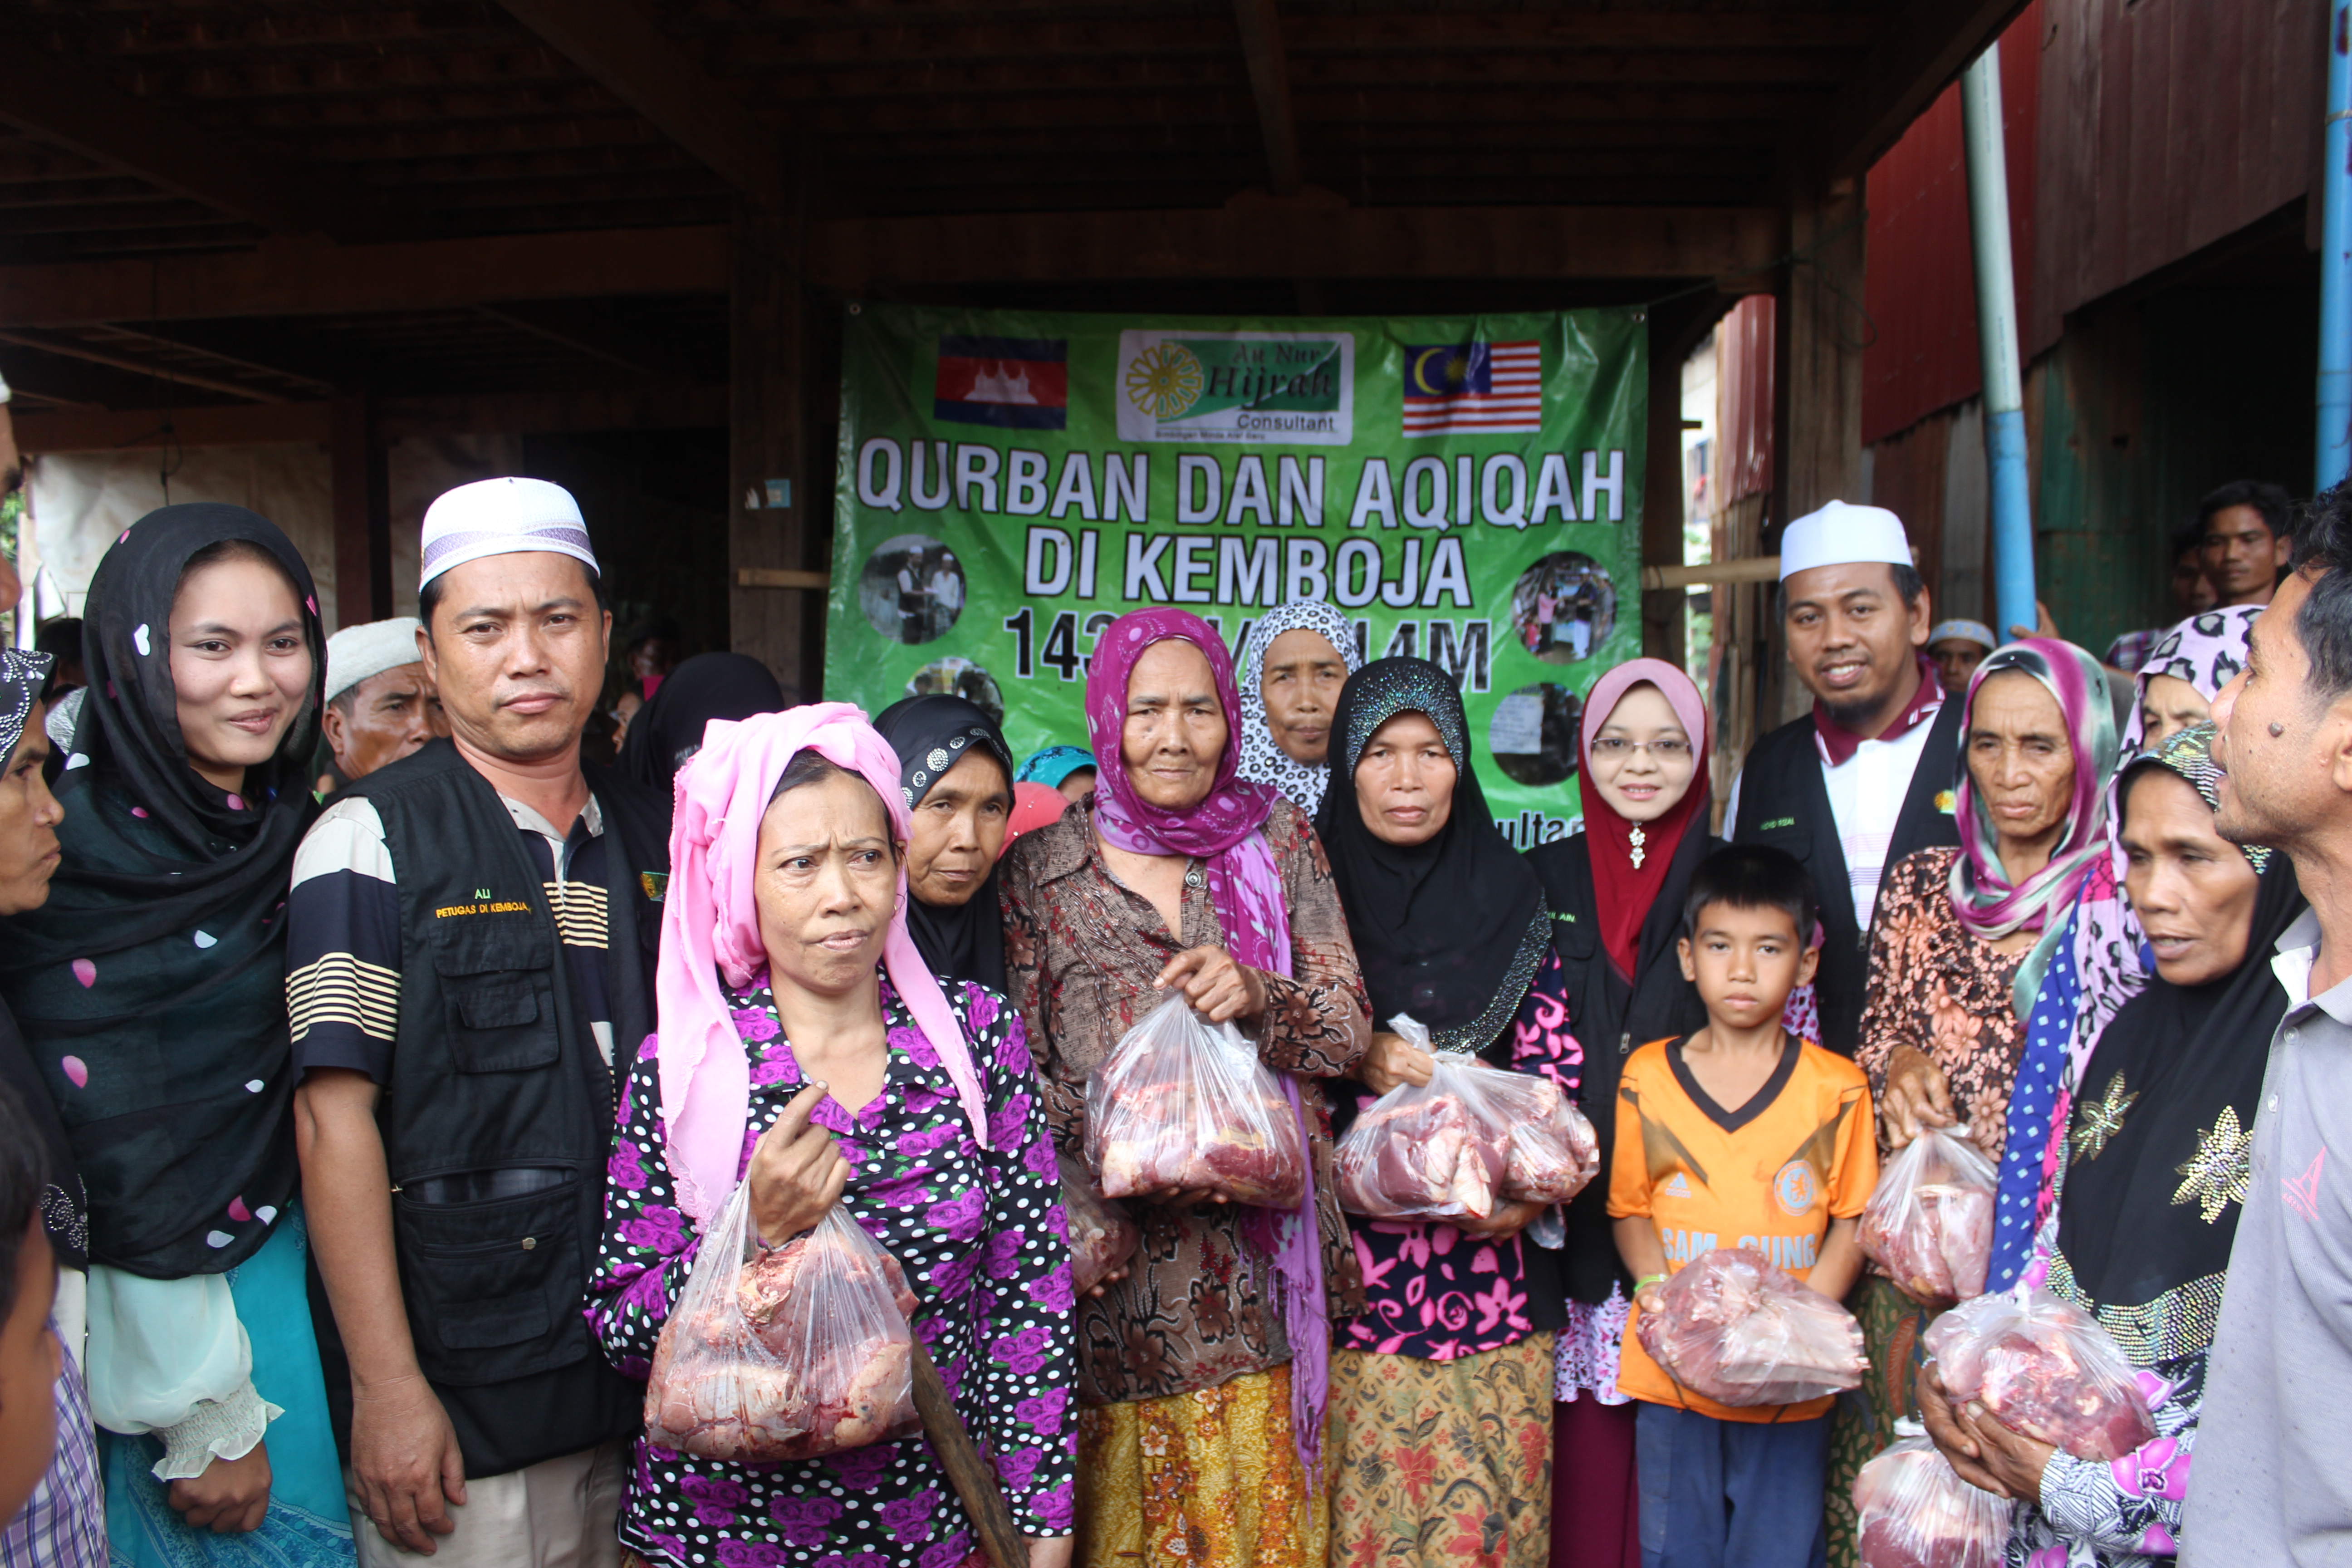 Program Qurban Di Kemboja